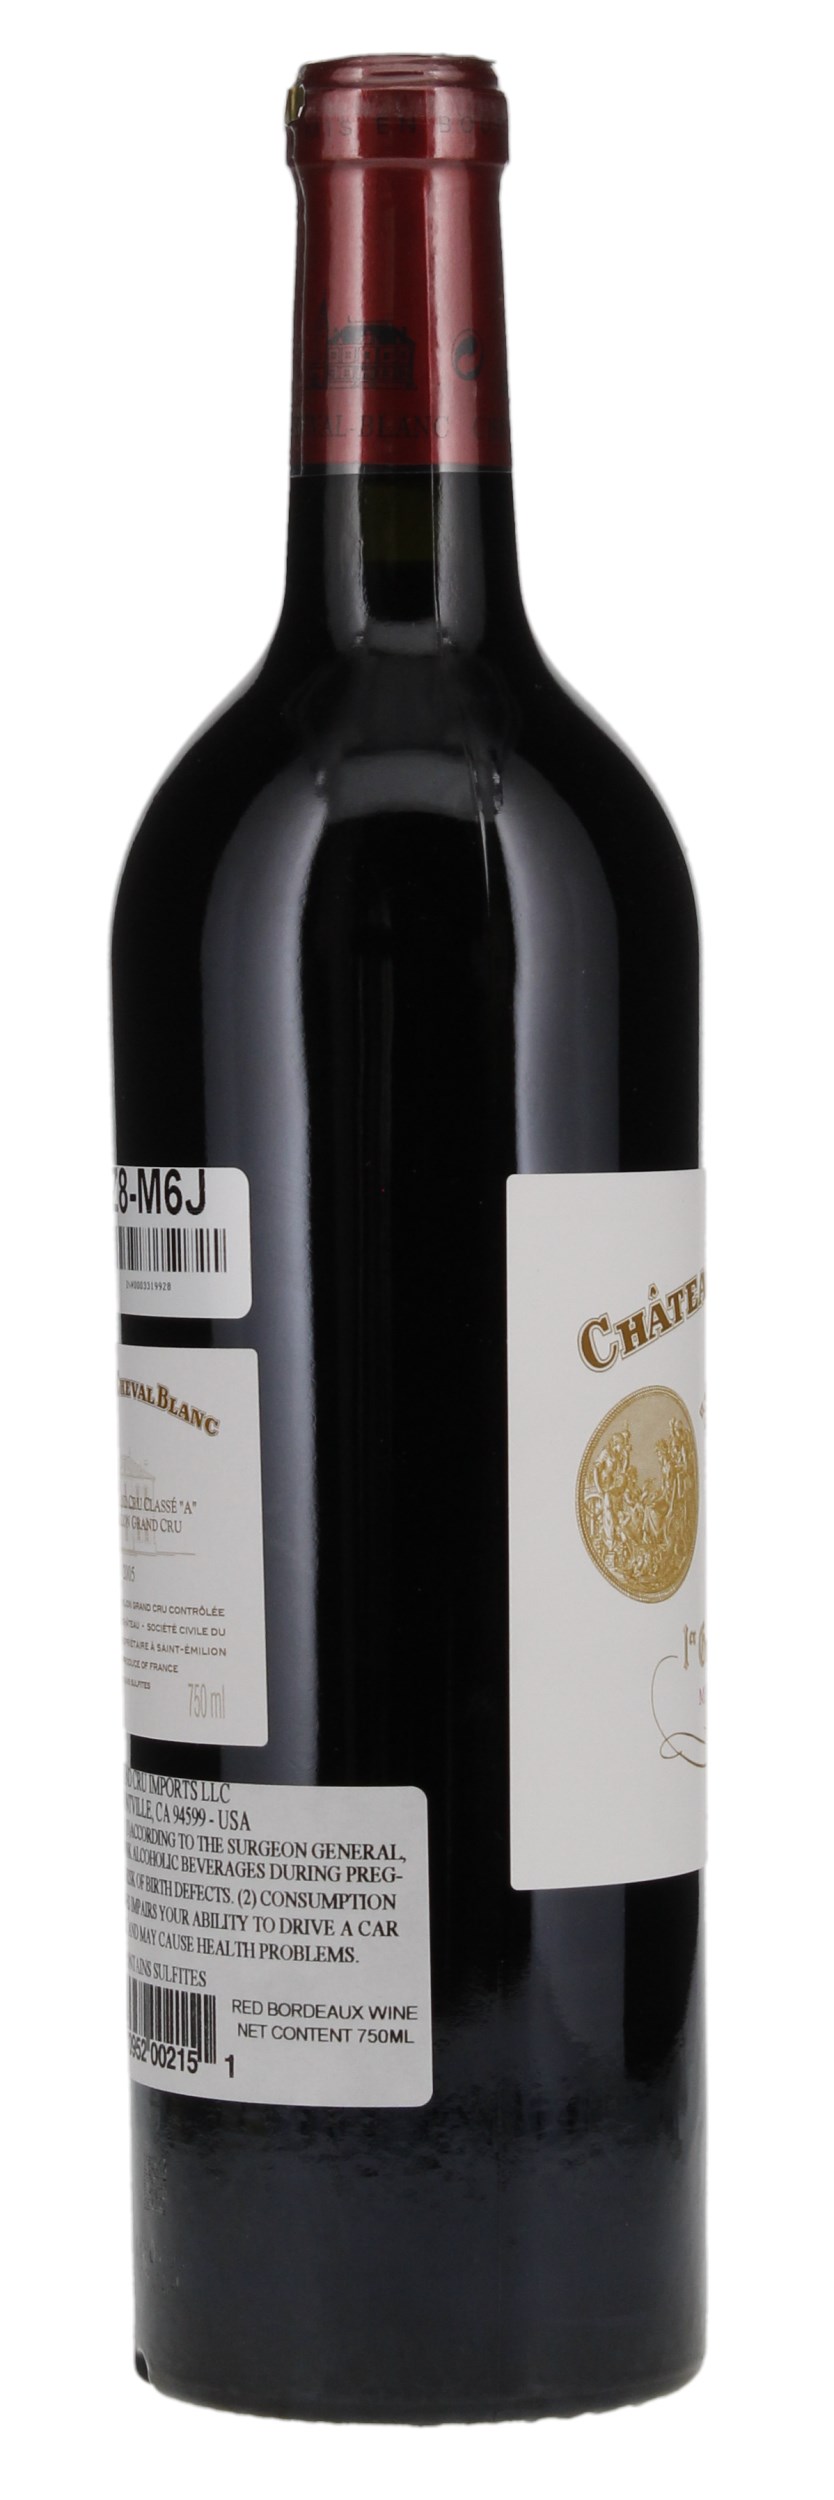 2005 Château Cheval-Blanc, 750ml